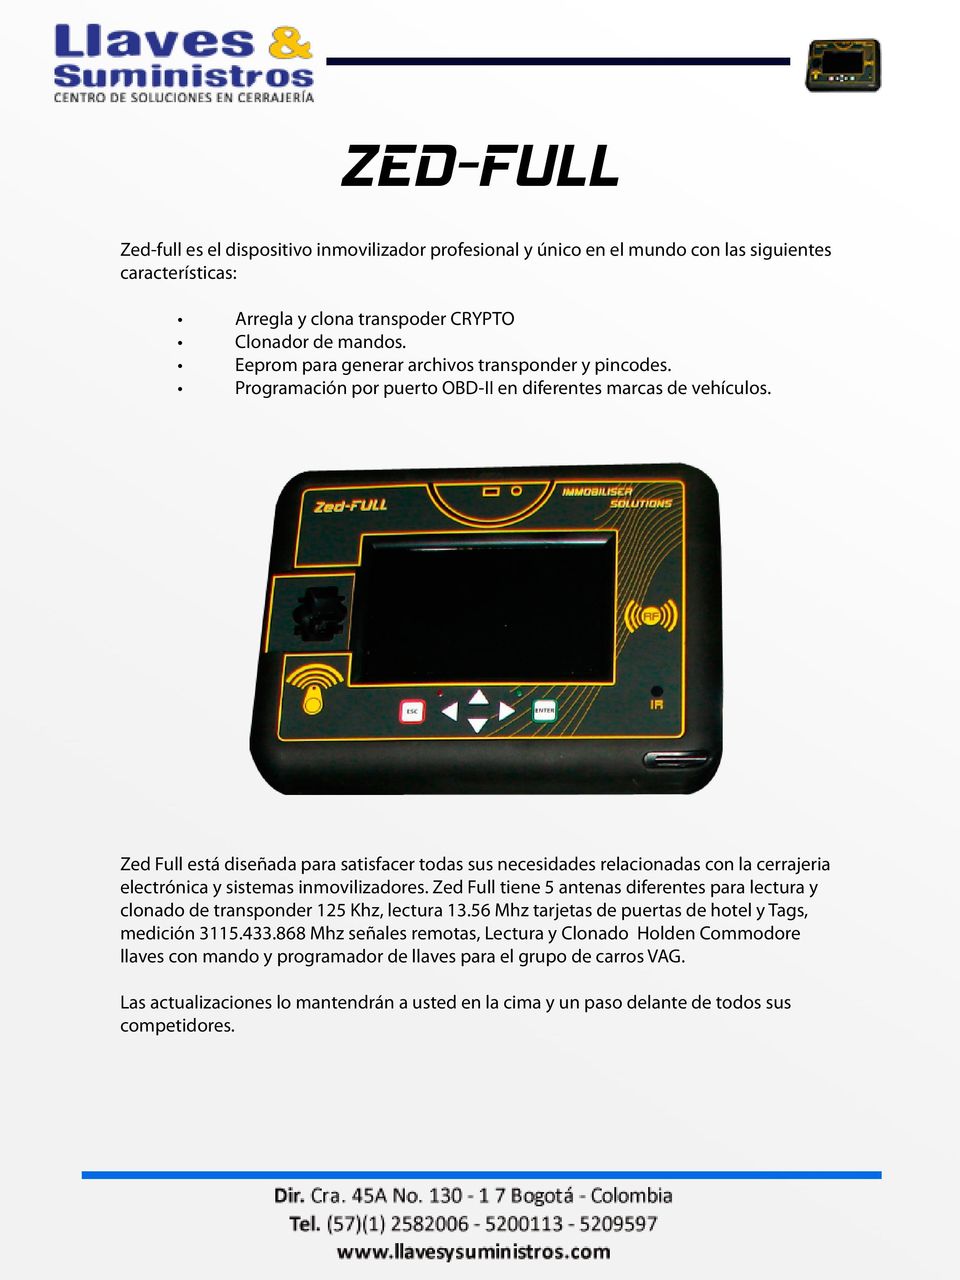 Zed Full está diseñada para satisfacer todas sus necesidades relacionadas con la cerrajeria electrónica y sistemas inmovilizadores.